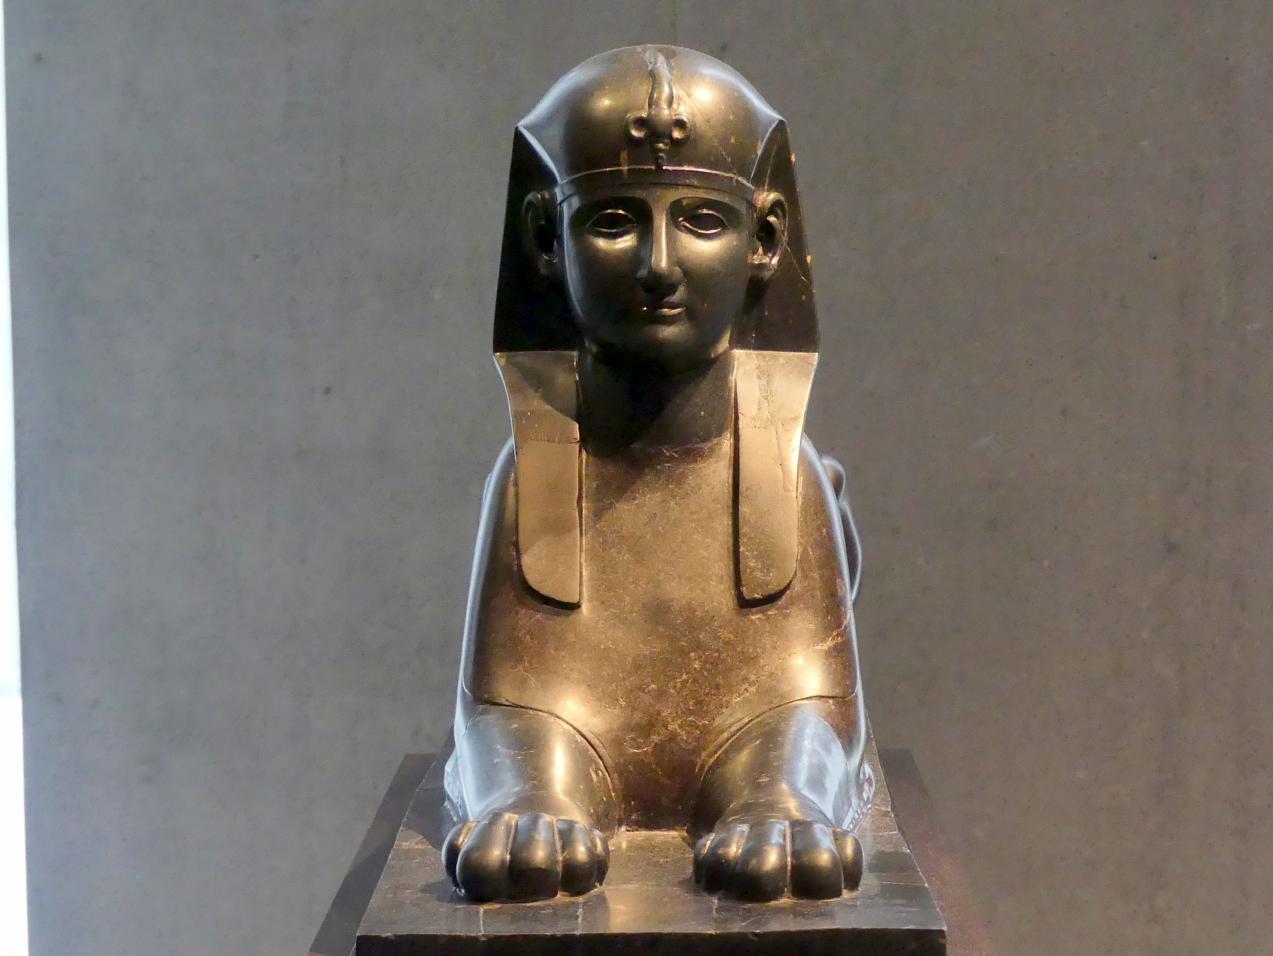 Sphinxfigur, Römische Kaiserzeit, 27 v. Chr. - 54 n. Chr., 1 - 100, Bild 1/6